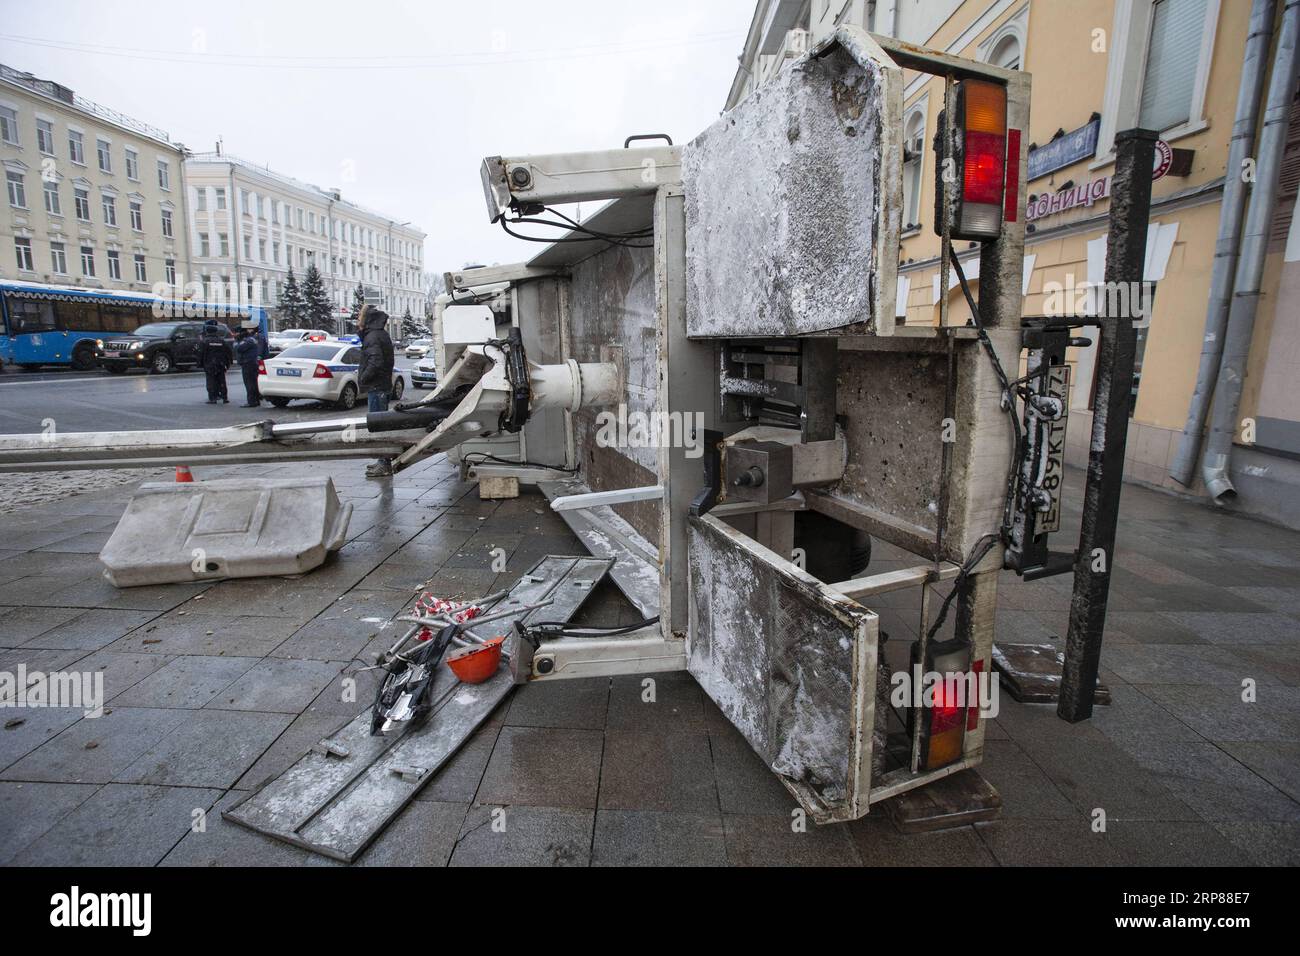 (190221) -- MOSCA, 21 febbraio 2019 -- Una gru caduta è vista in una strada nel centro di Mosca, in Russia, il 21 febbraio 2019. Due veicoli sono stati danneggiati dalla gru caduta qui giovedì. RUSSIA-MOSCA-INCIDENTE AlexanderxZemlianichenkoxJr PUBLICATIONxNOTxINxCHN Foto Stock